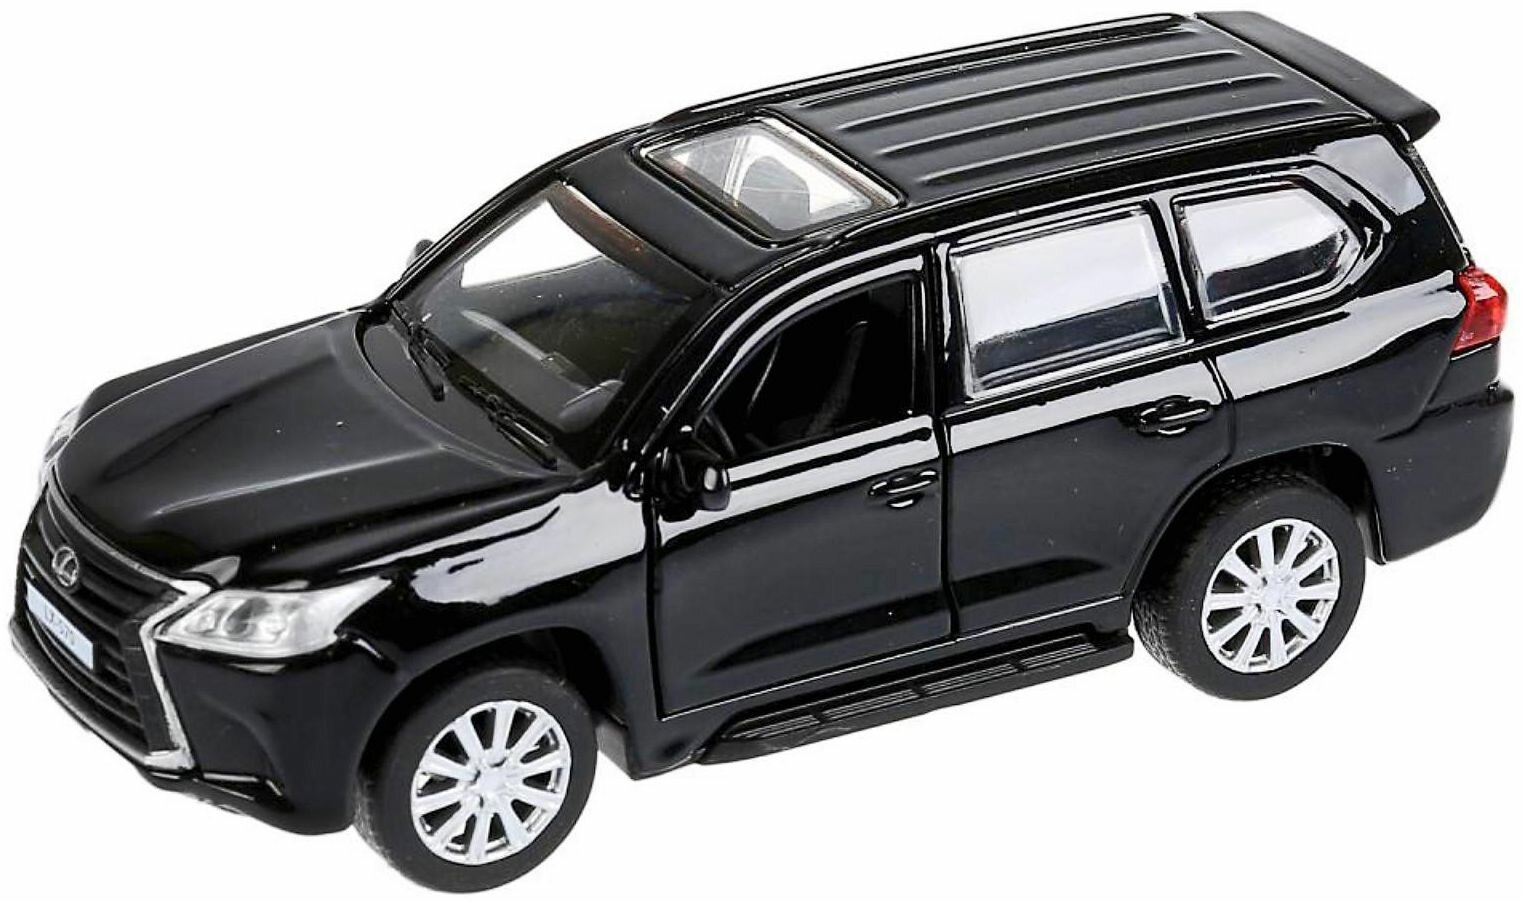 Машина металлическая "Lexus LX-570" инерционная, 12 см, открываются двери и багажник, игрушечный транспорт, масштабная коллекционная модель, детская игрушка для песочницы и дома, цвет черный